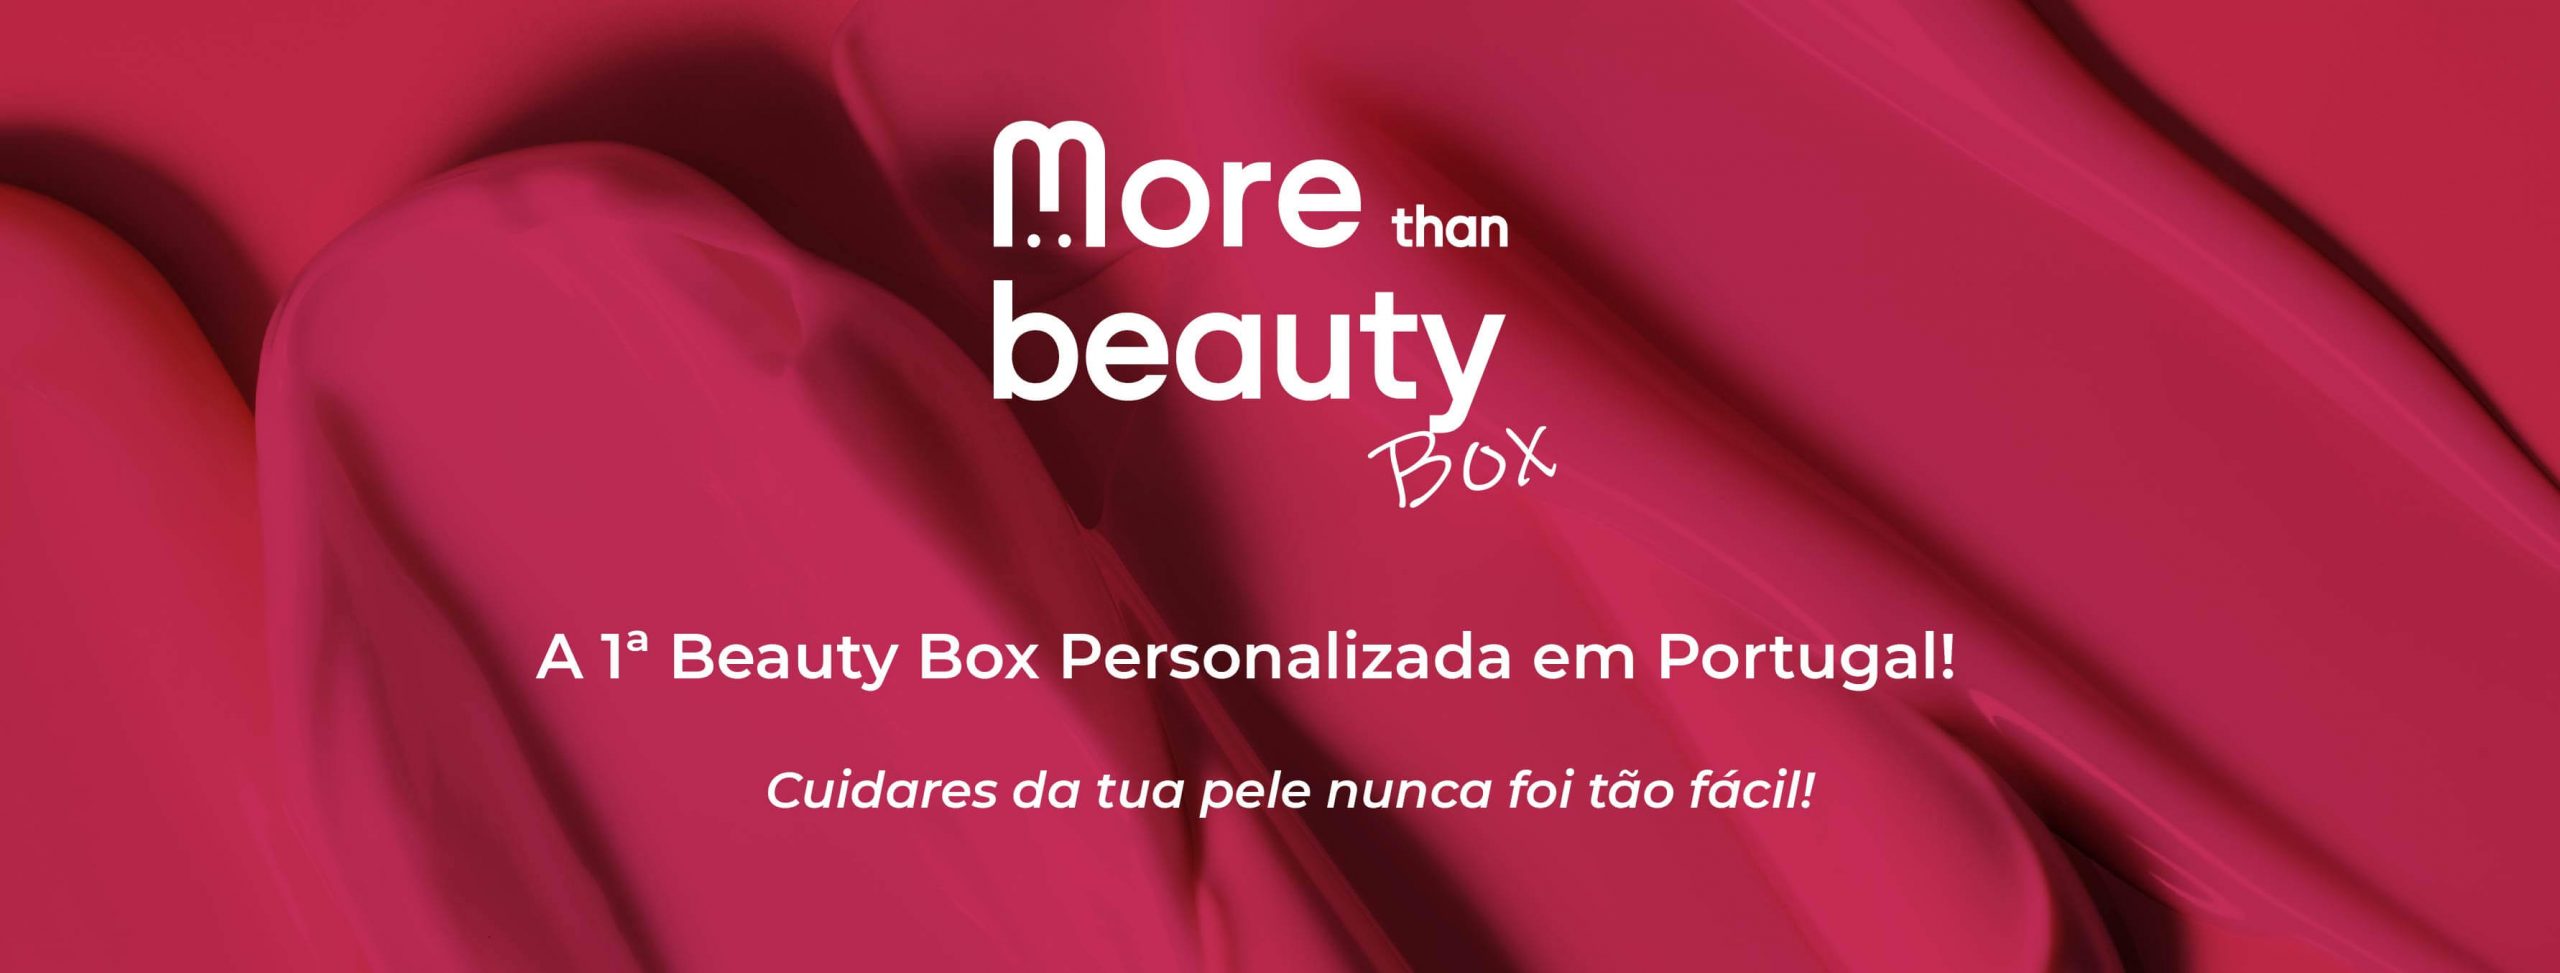 Beauty boxes_desktop